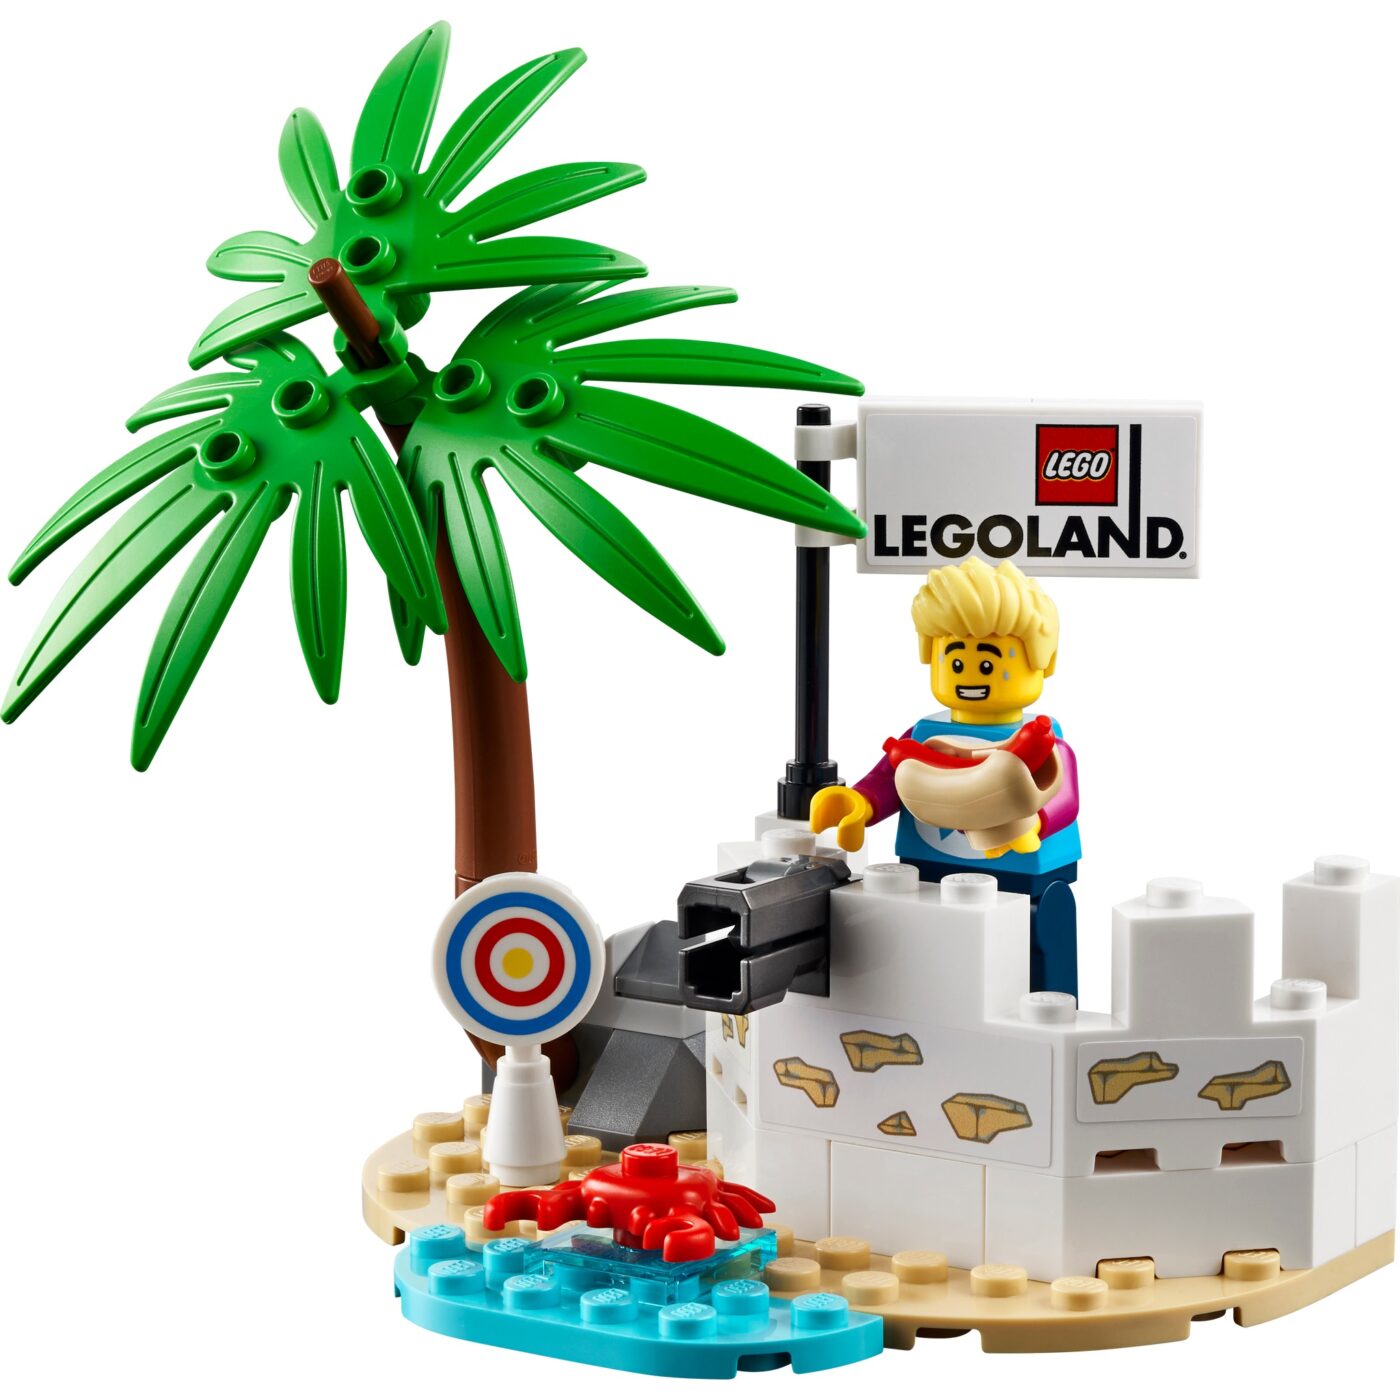 New LEGOLAND-exclusive 40710 Legoland Pirate Splash Battle revealed!3